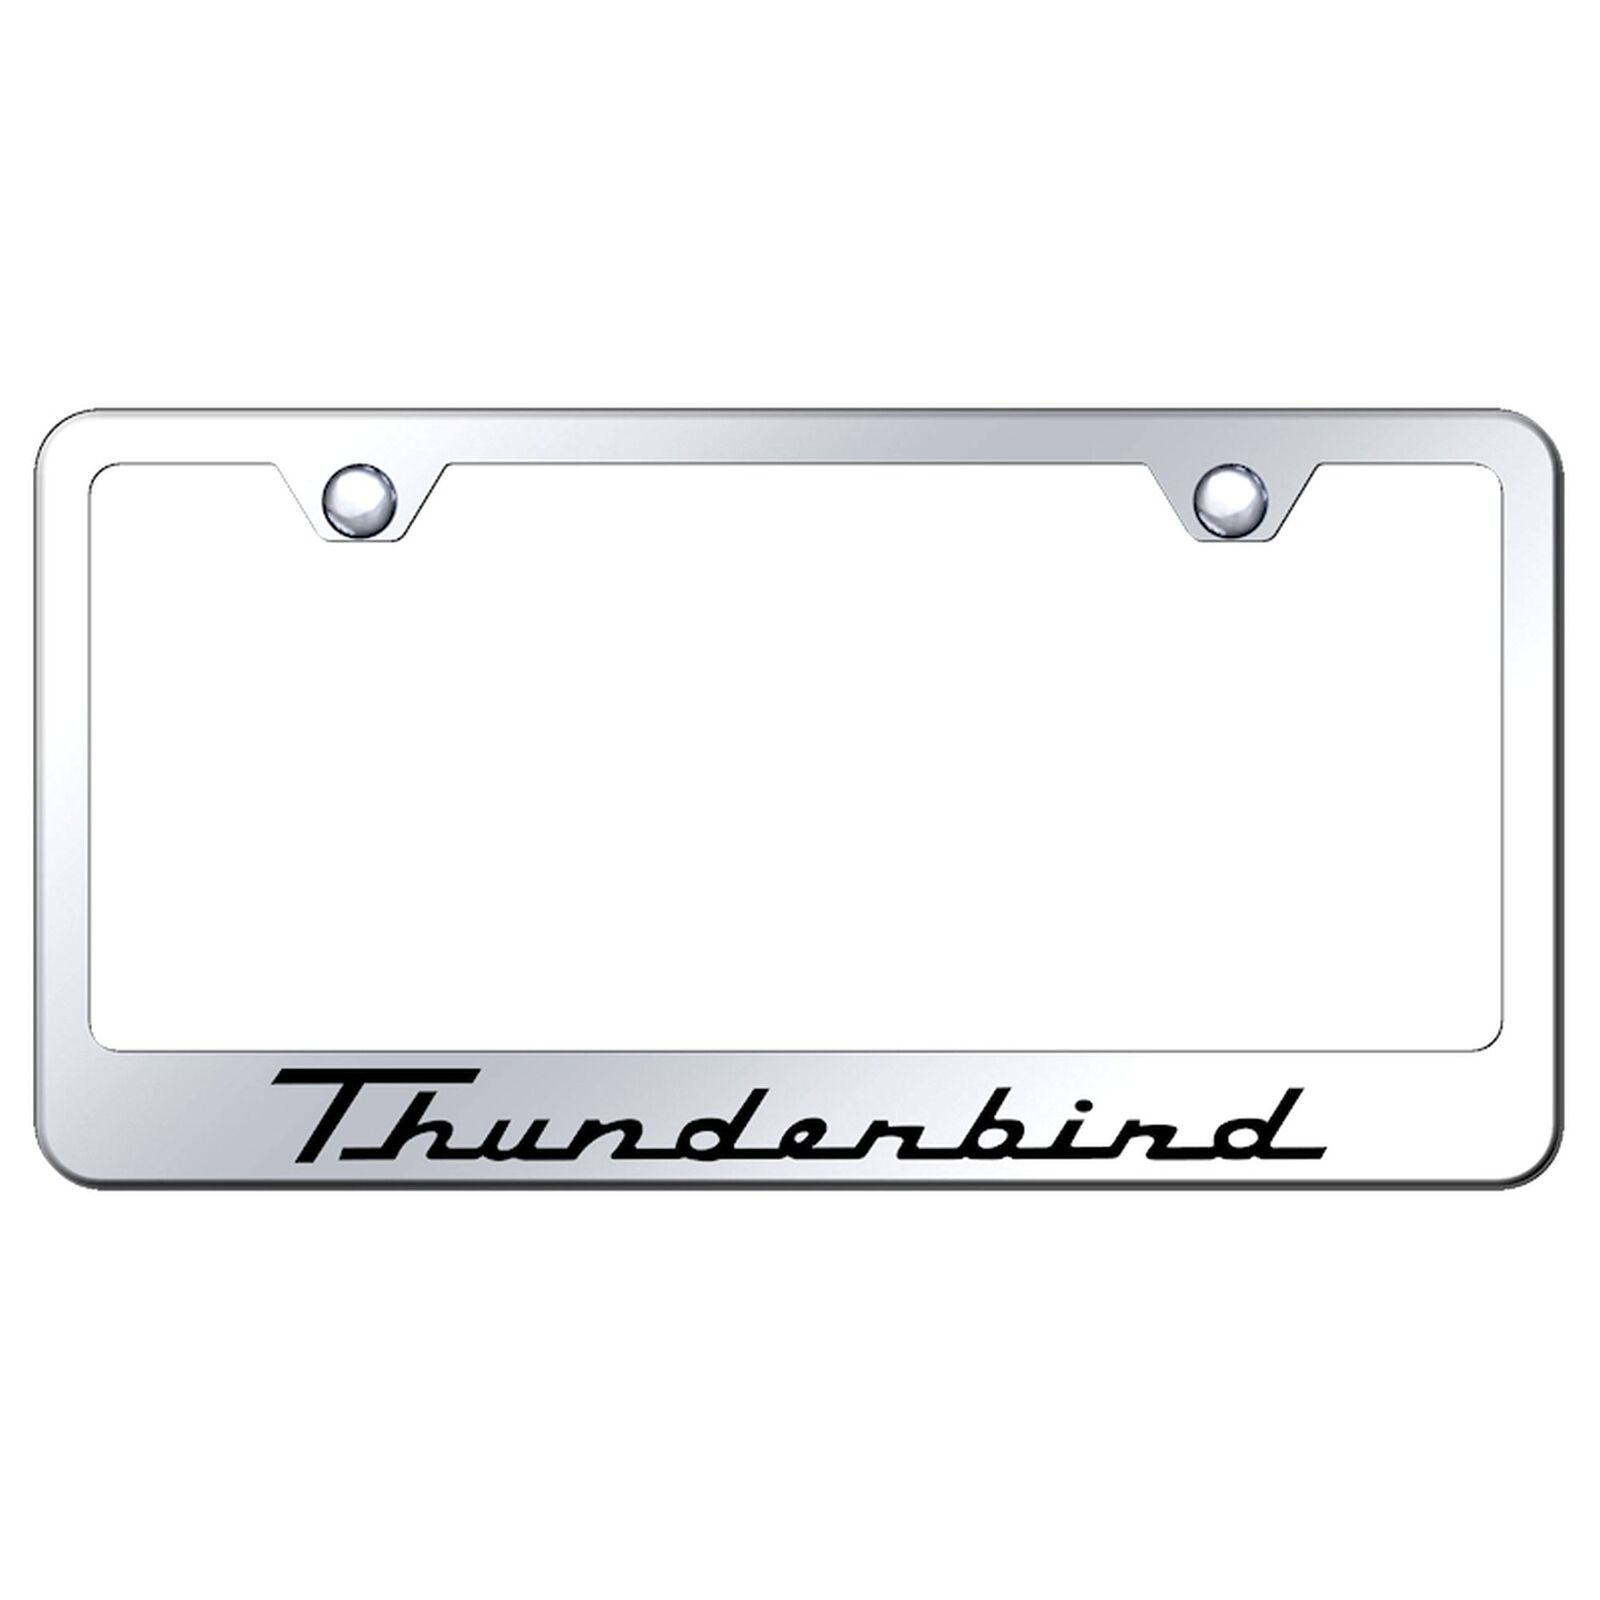 Ford Thunderbird License Plate Frame (Chrome)